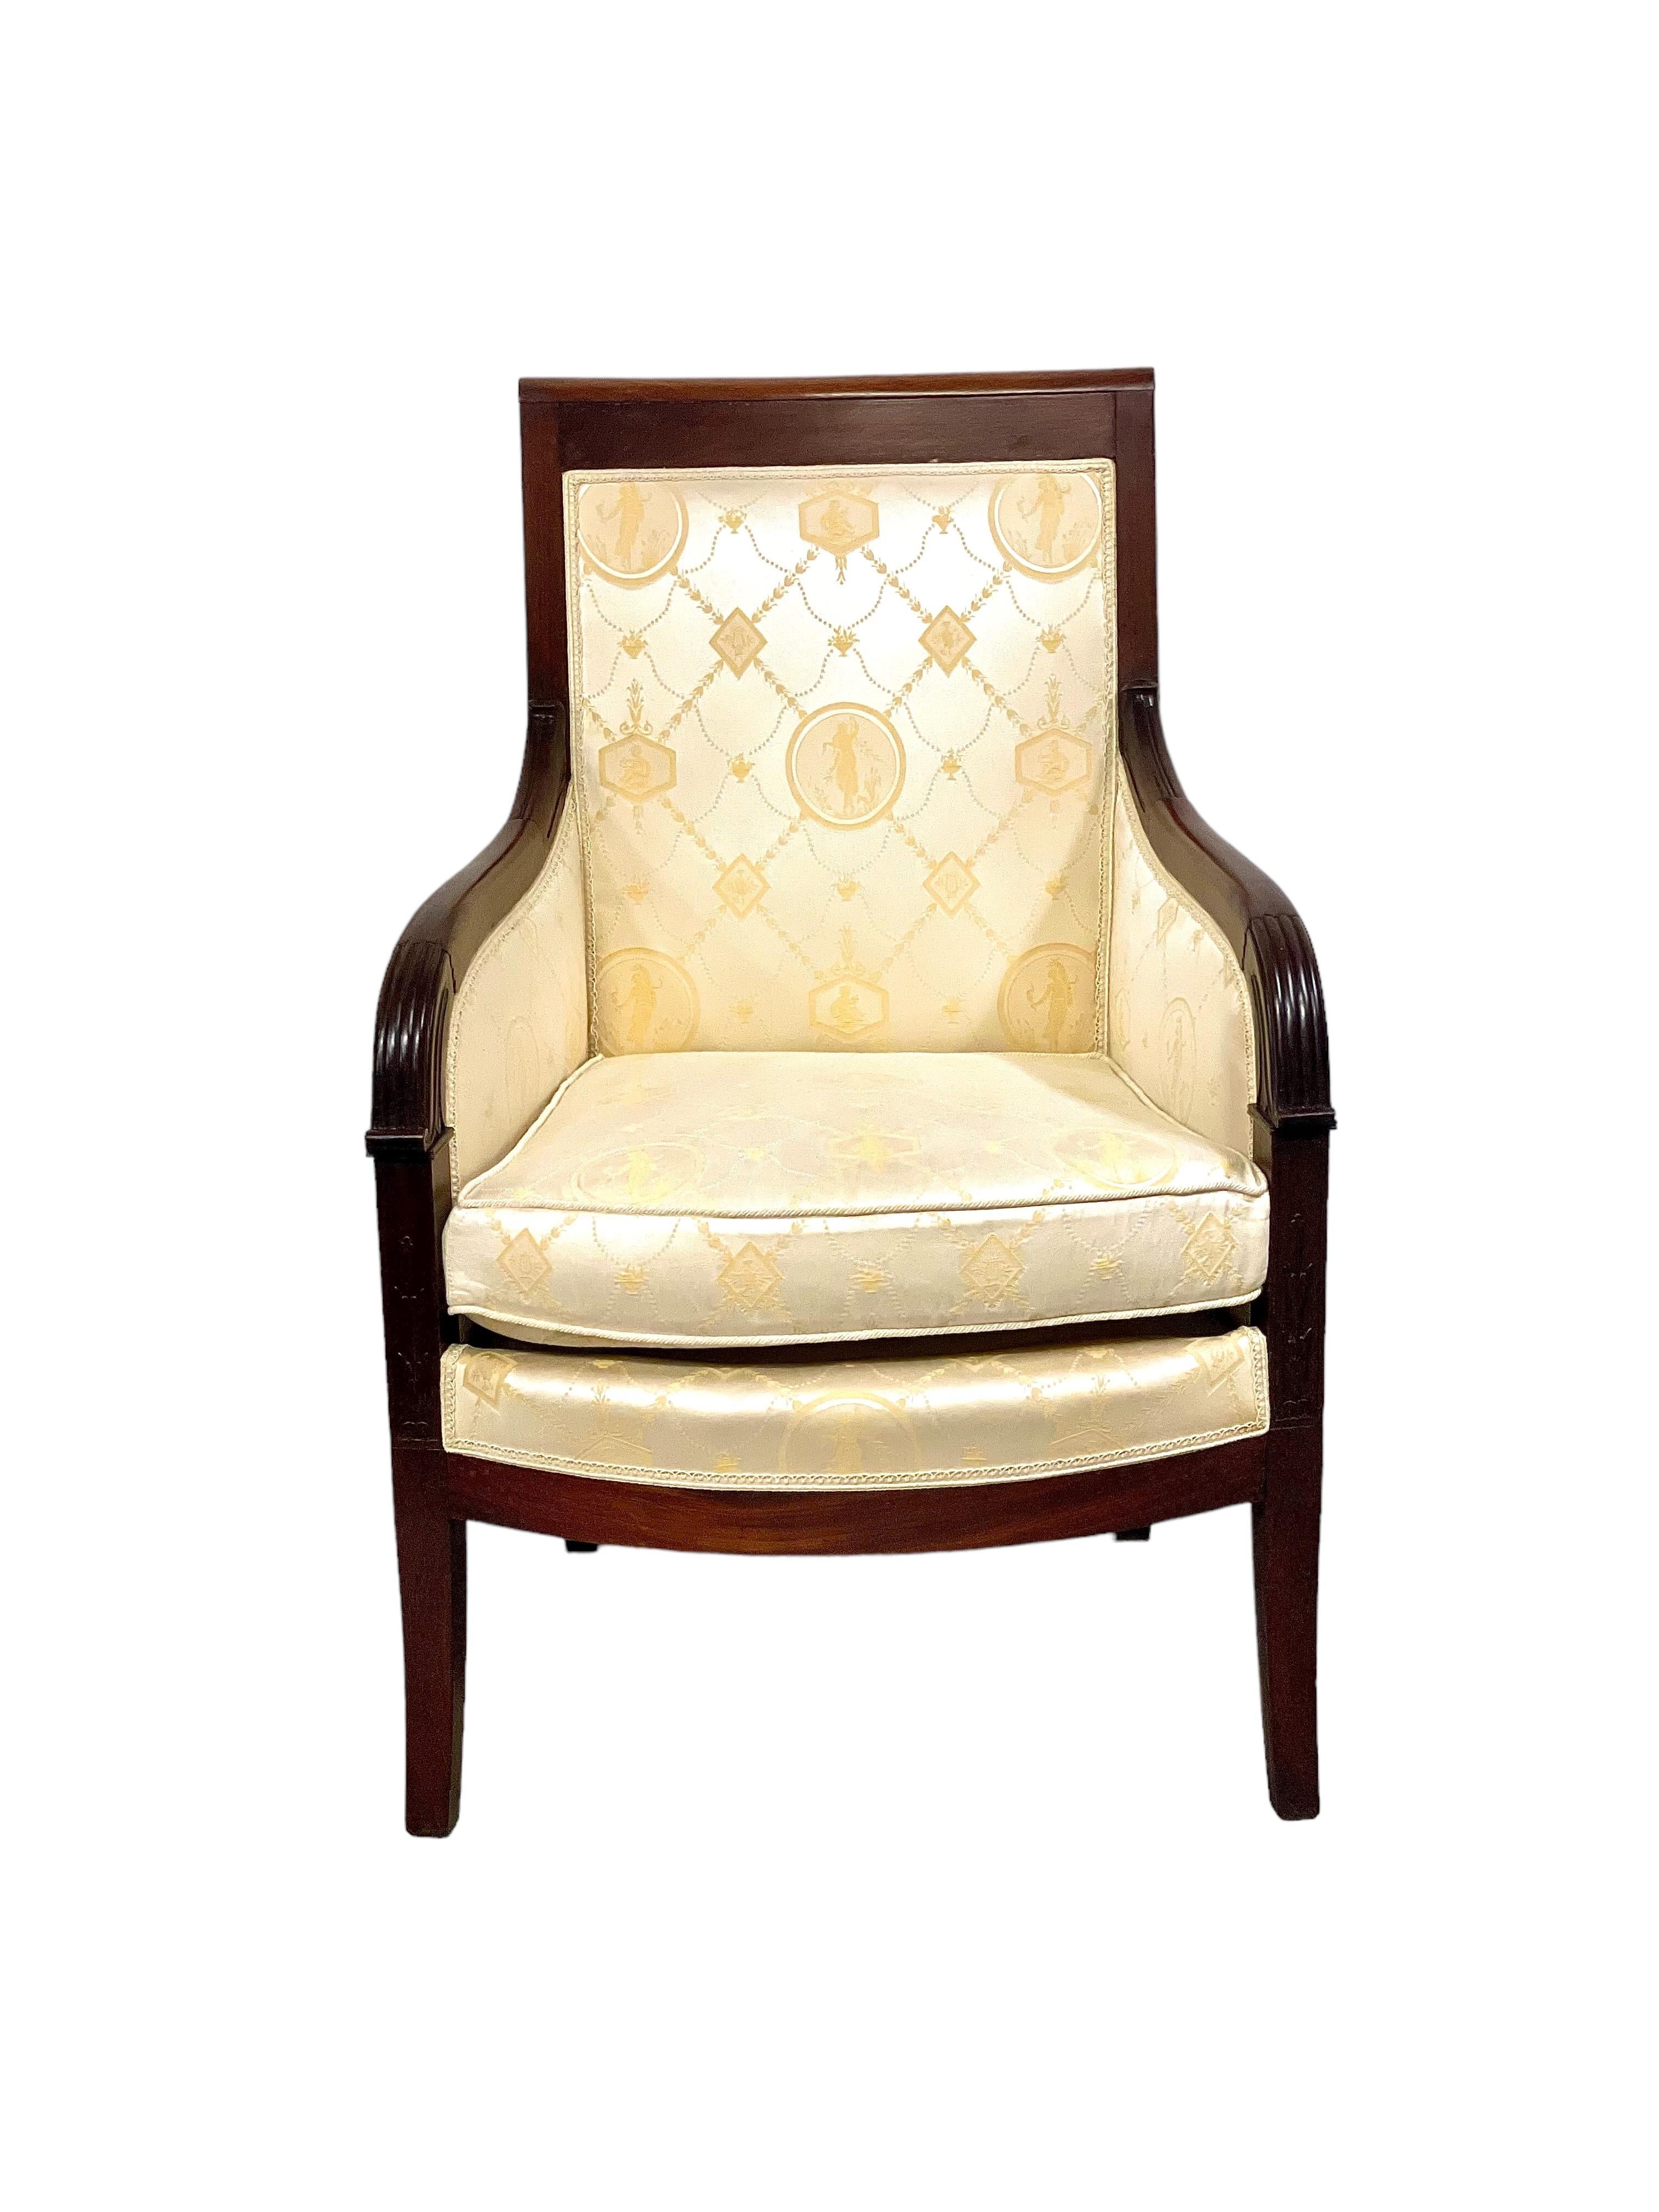 Ein hübsches Paar Bergère-Sessel aus Stoff in massivem Mahagoni und Mahagoni-Furnier. Diese sehr auffälligen Stühle aus der Empire-Periode sind in ausgezeichnetem Zustand. Die Polsterung aus cremefarbenem Stoff ist mit einem klassischen Muster aus